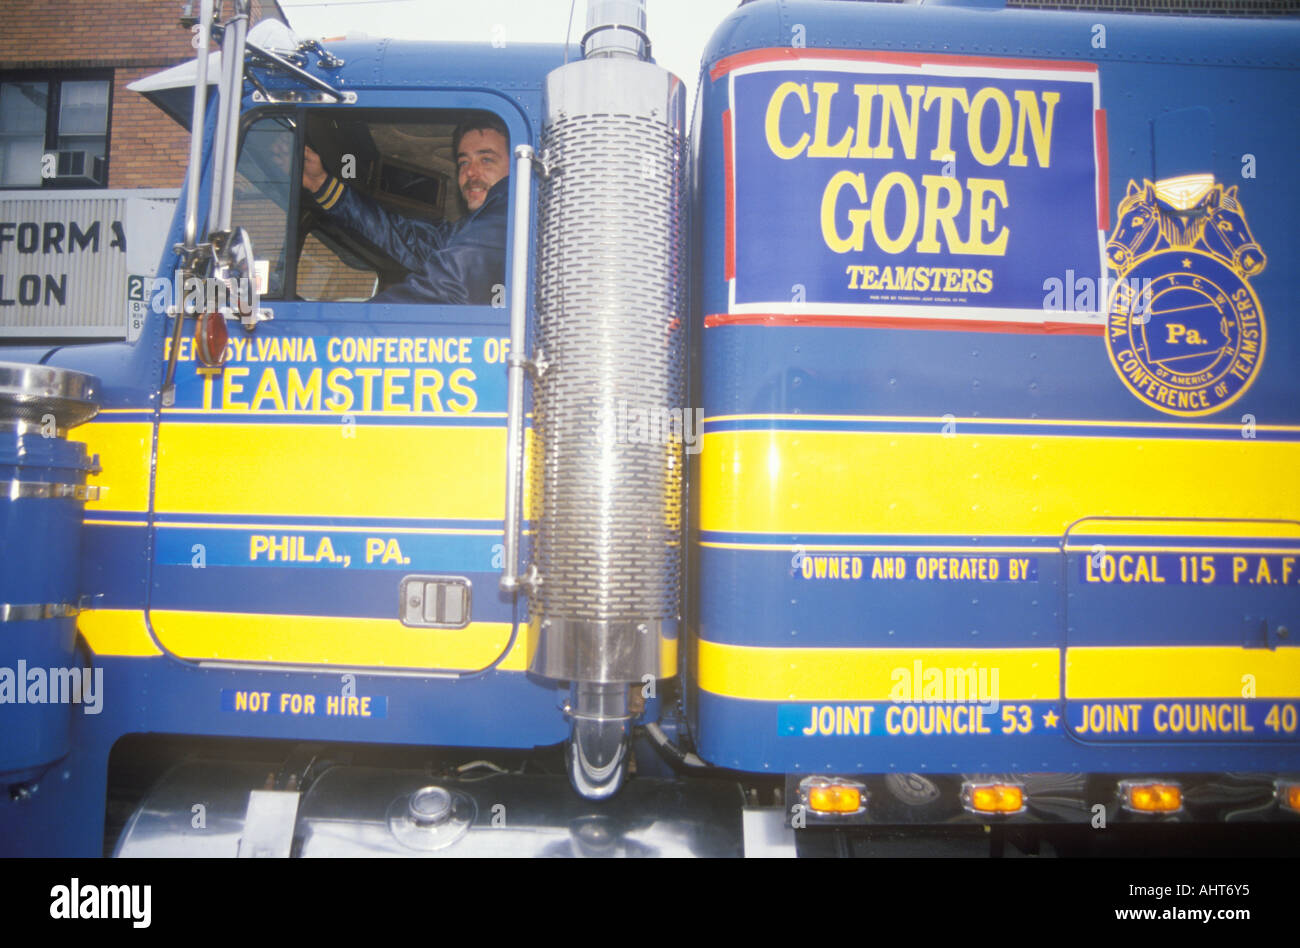 Les Teamsters for Clinton Gore au Mayfield Diner en 1992 pour son dernier jour de campagne, à Philadelphie en Pennsylvanie Banque D'Images